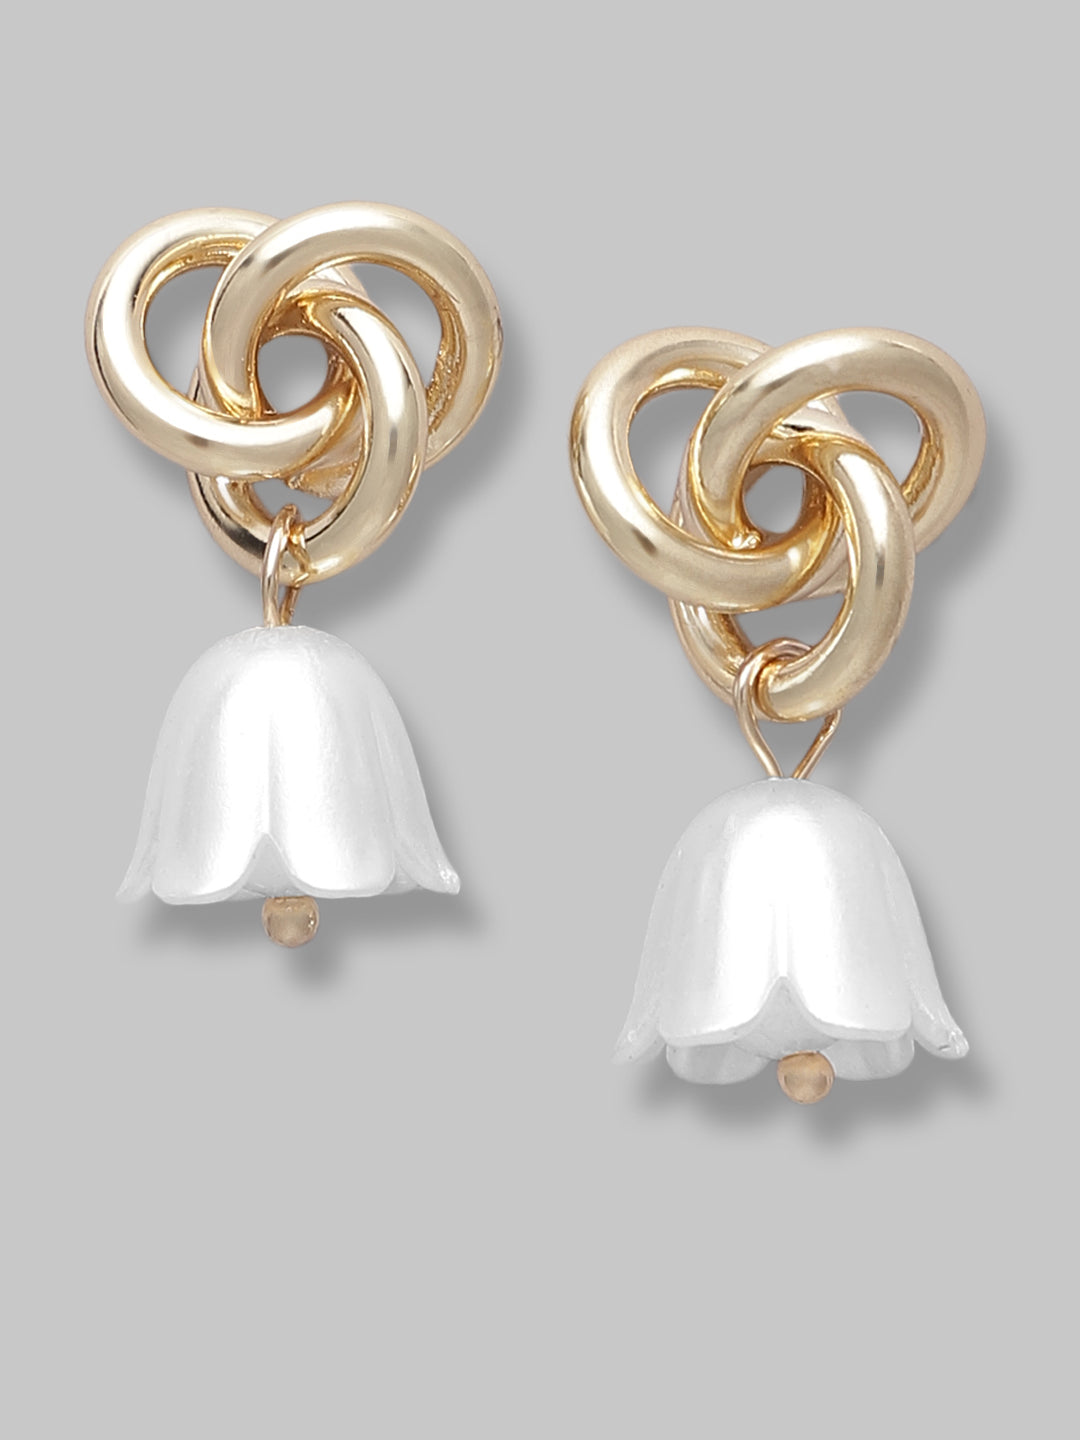 Brass Metal Bell Shaped Teardrop Earrings For Women And Girls